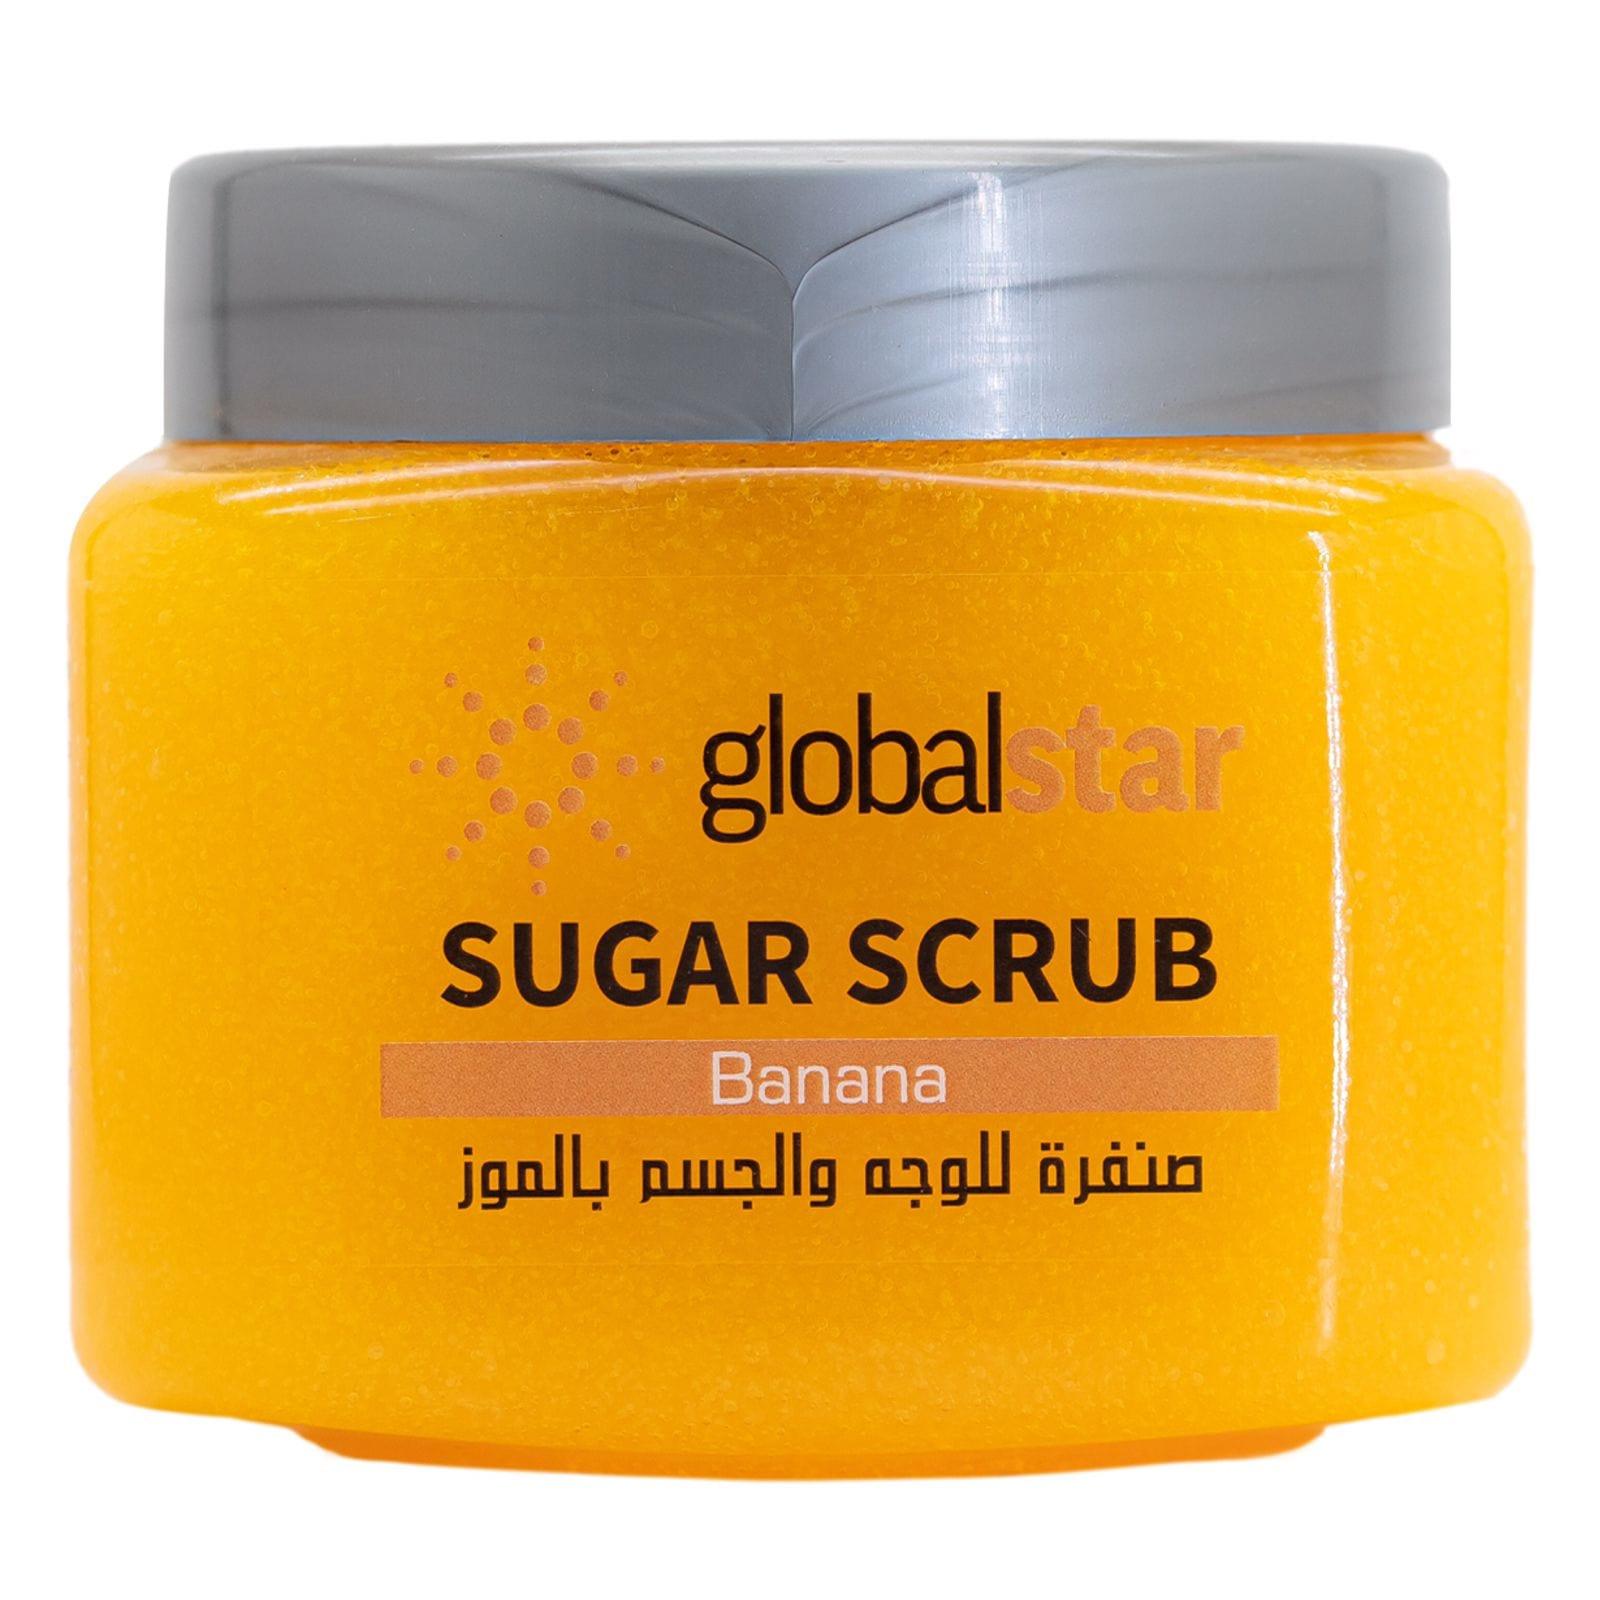 Globalstar Face & Body Sugar Scrub Banana 600g